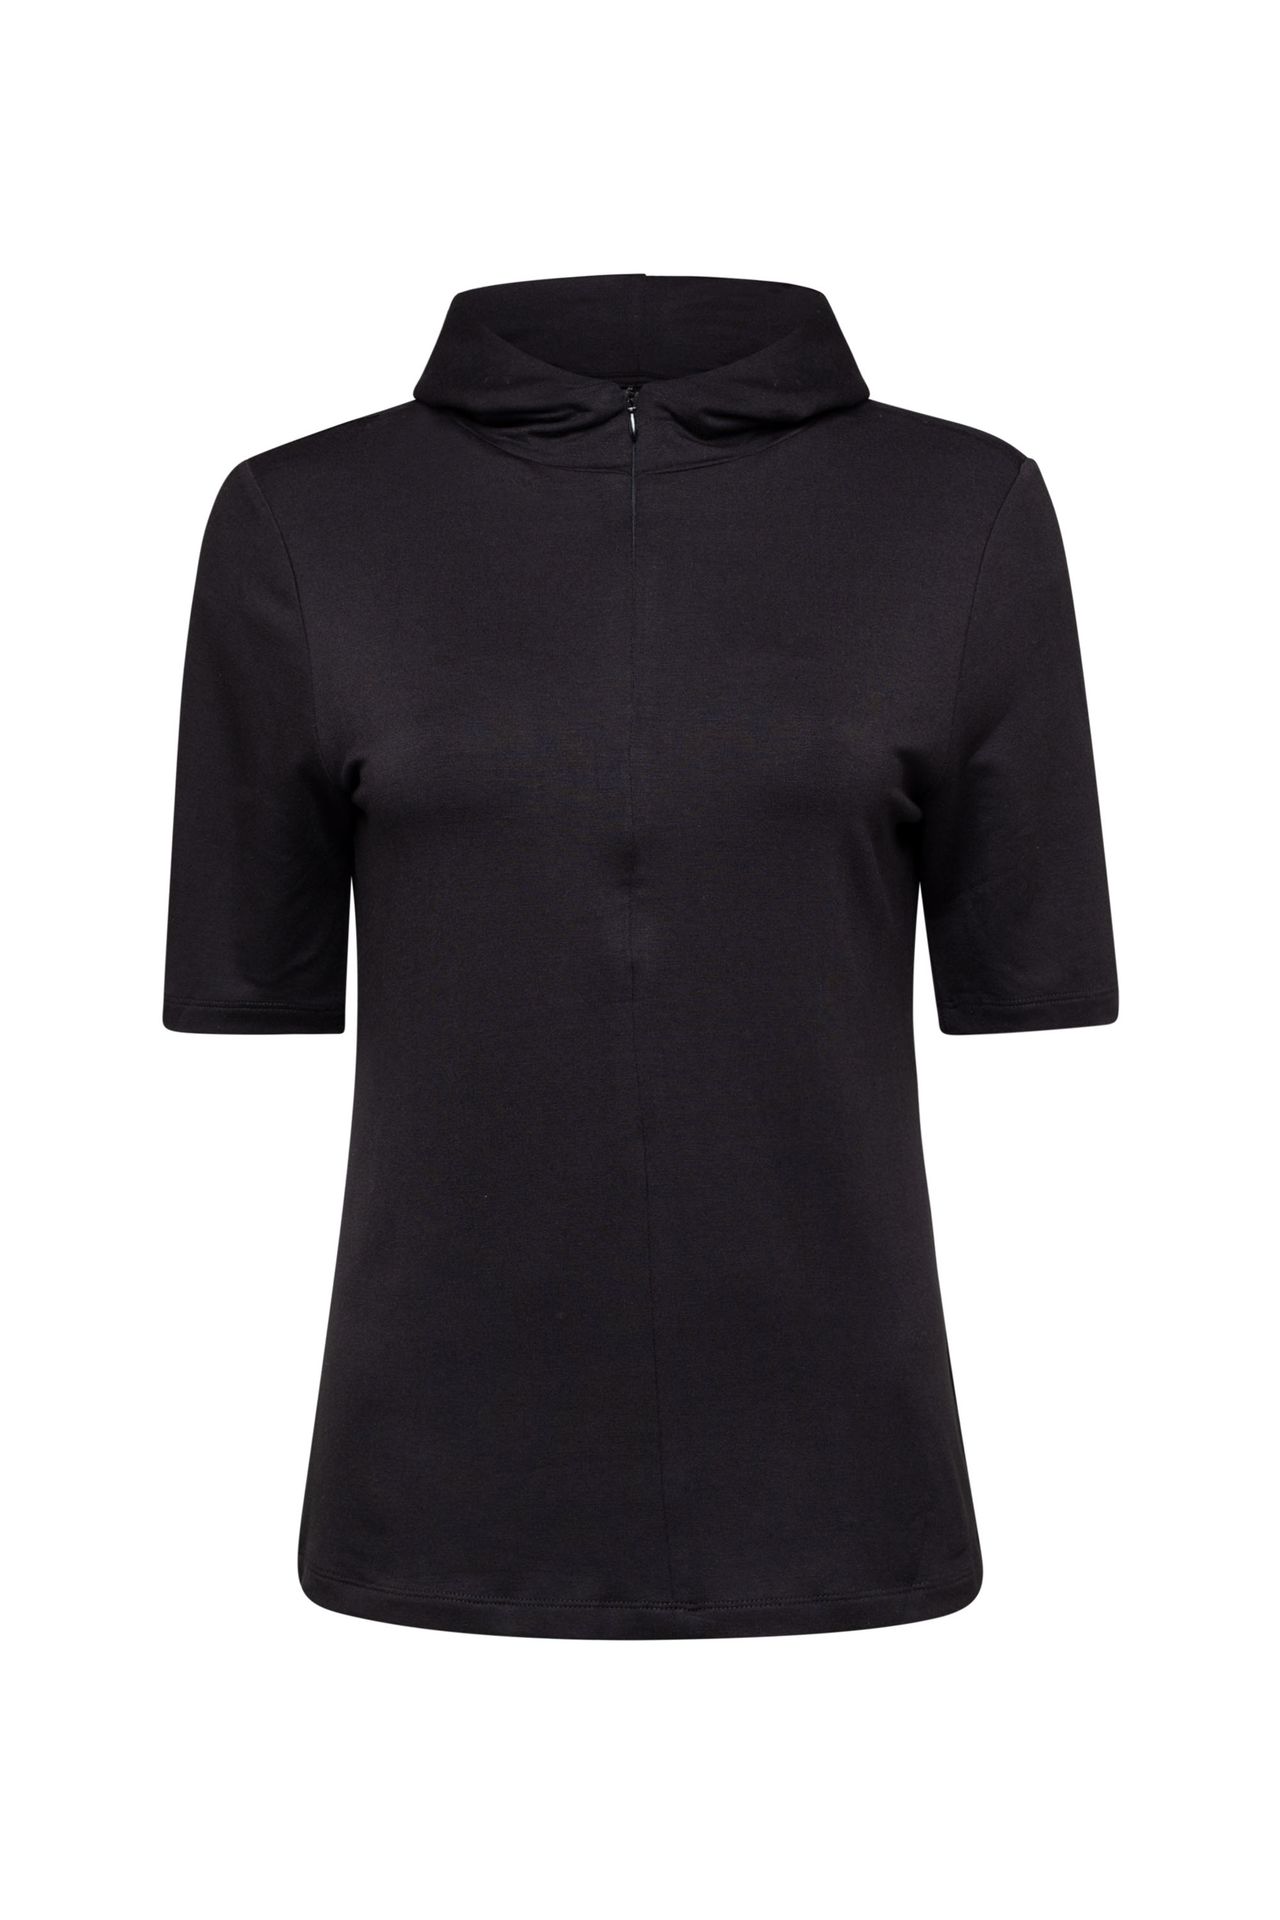 Norah Shirt - Activewear black 211906-001